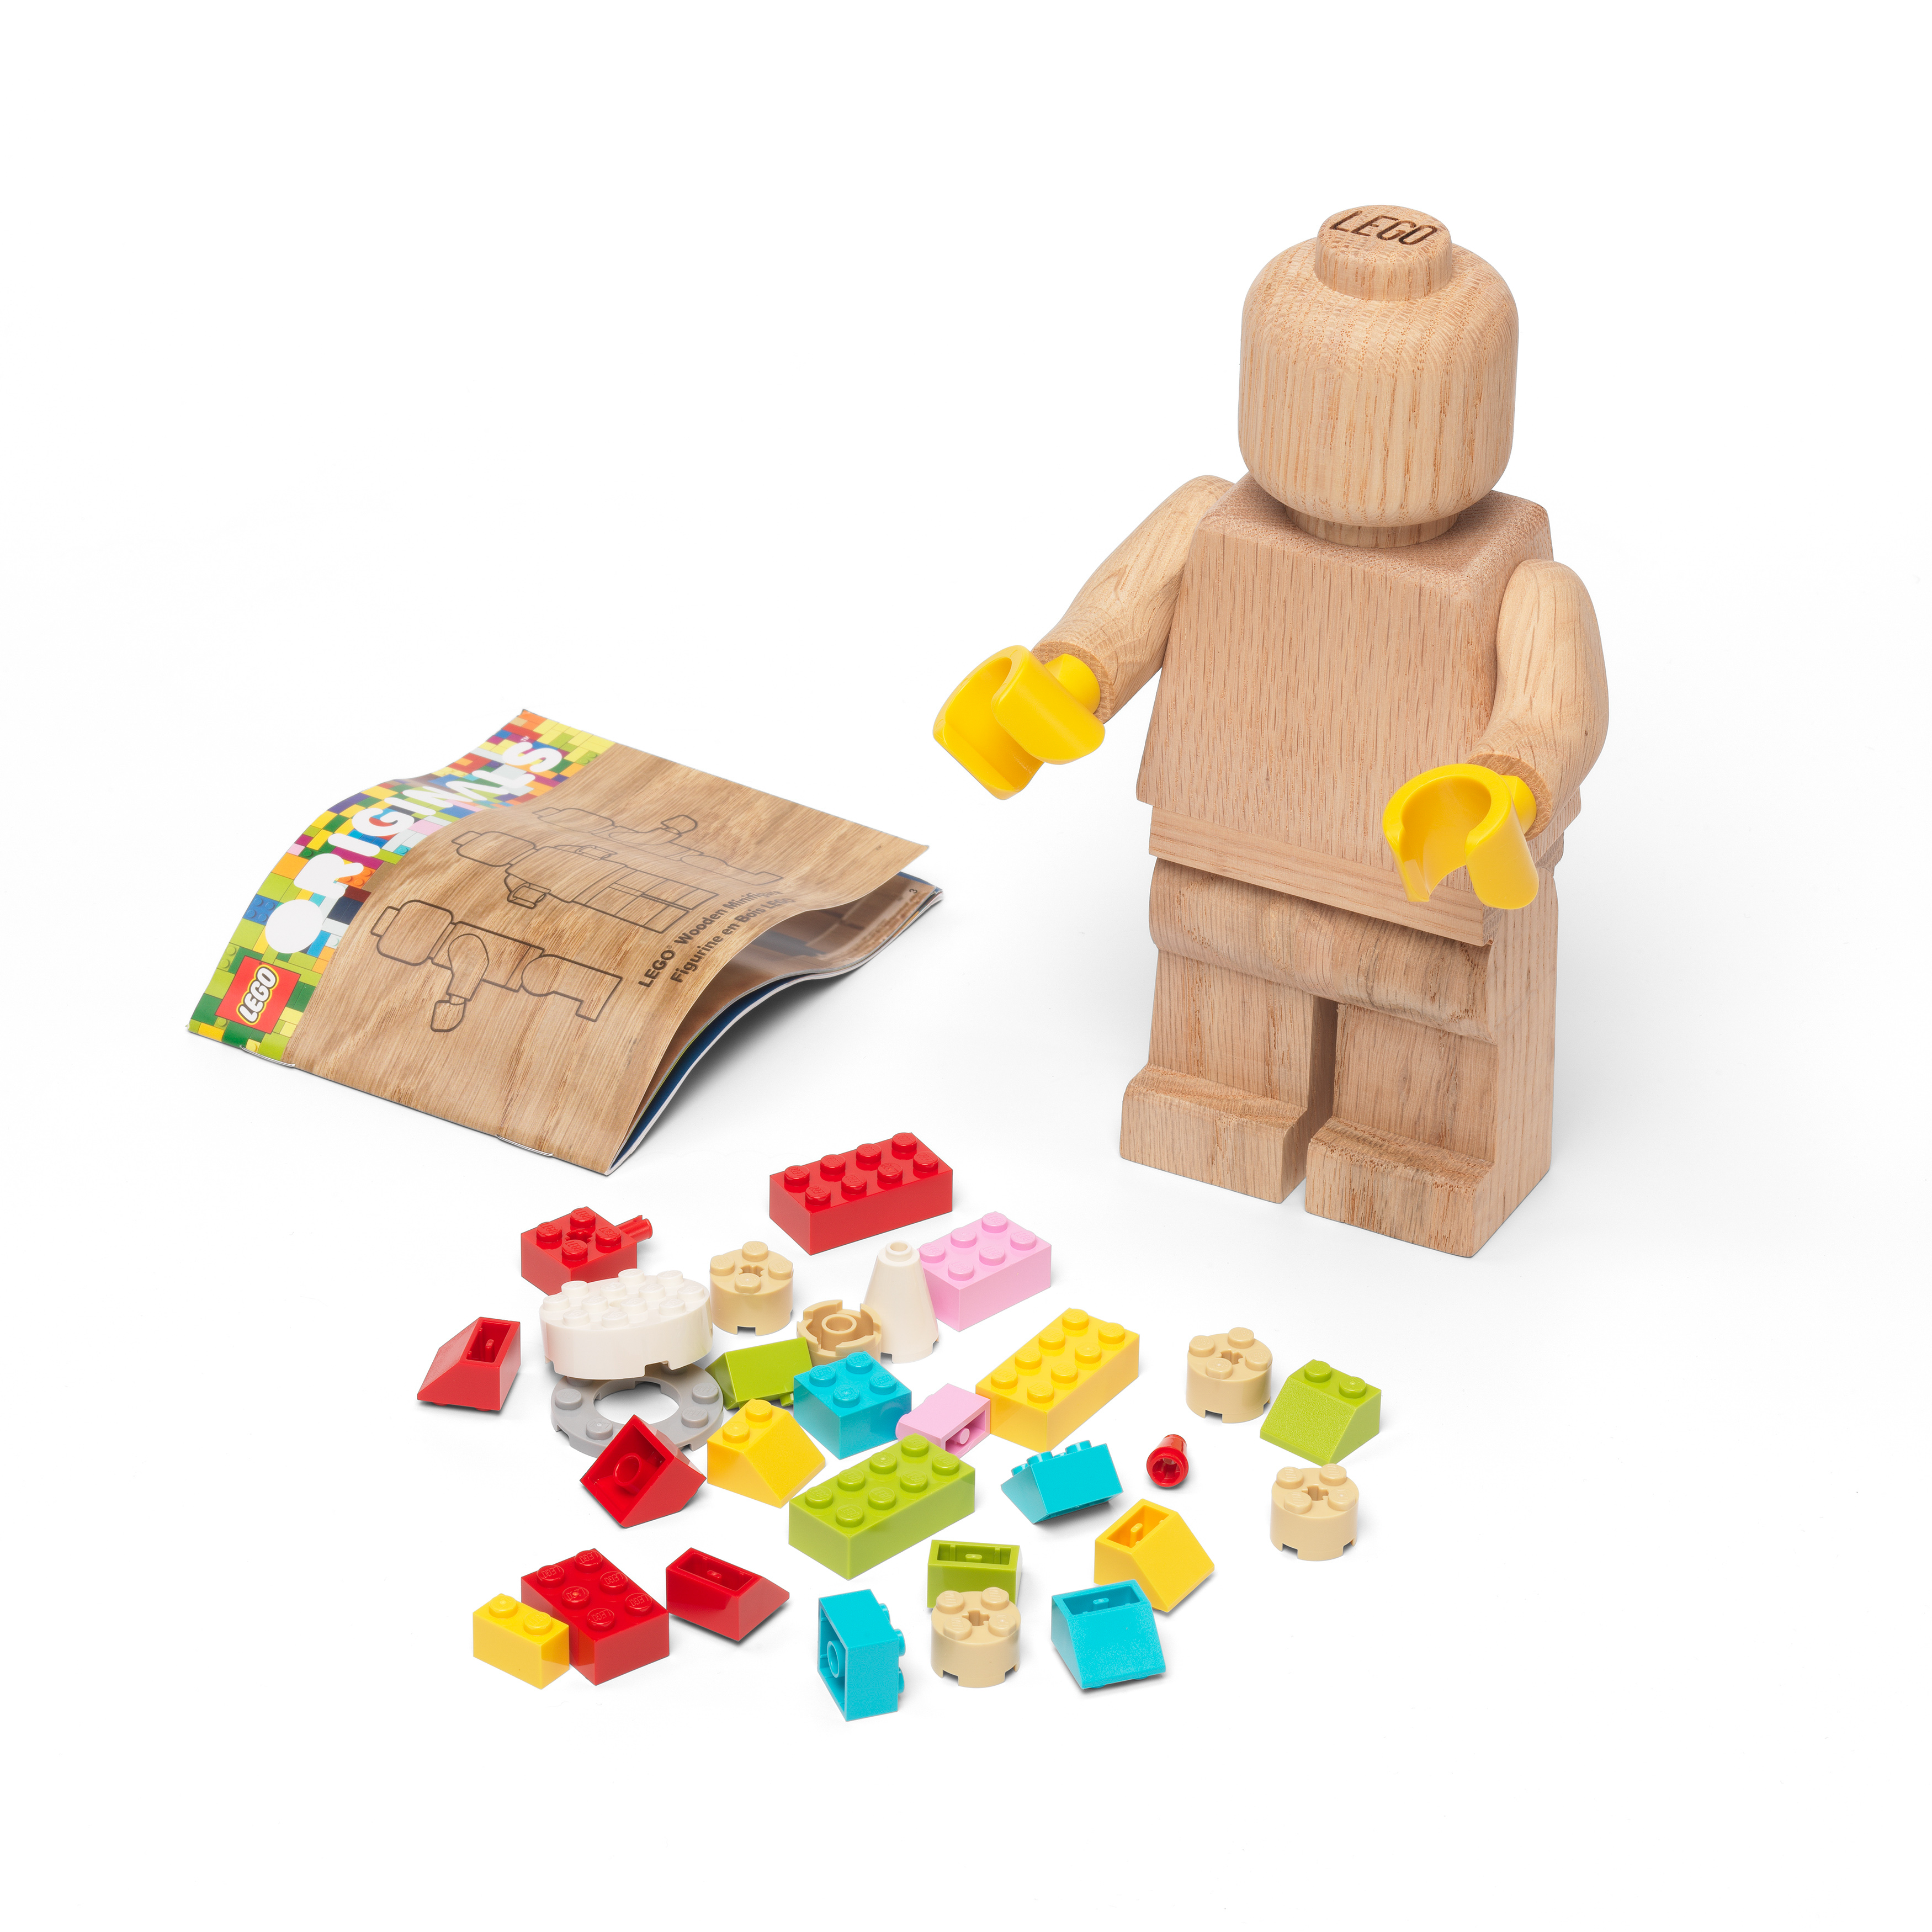 Mini figurine en bois LEGO de Lego 